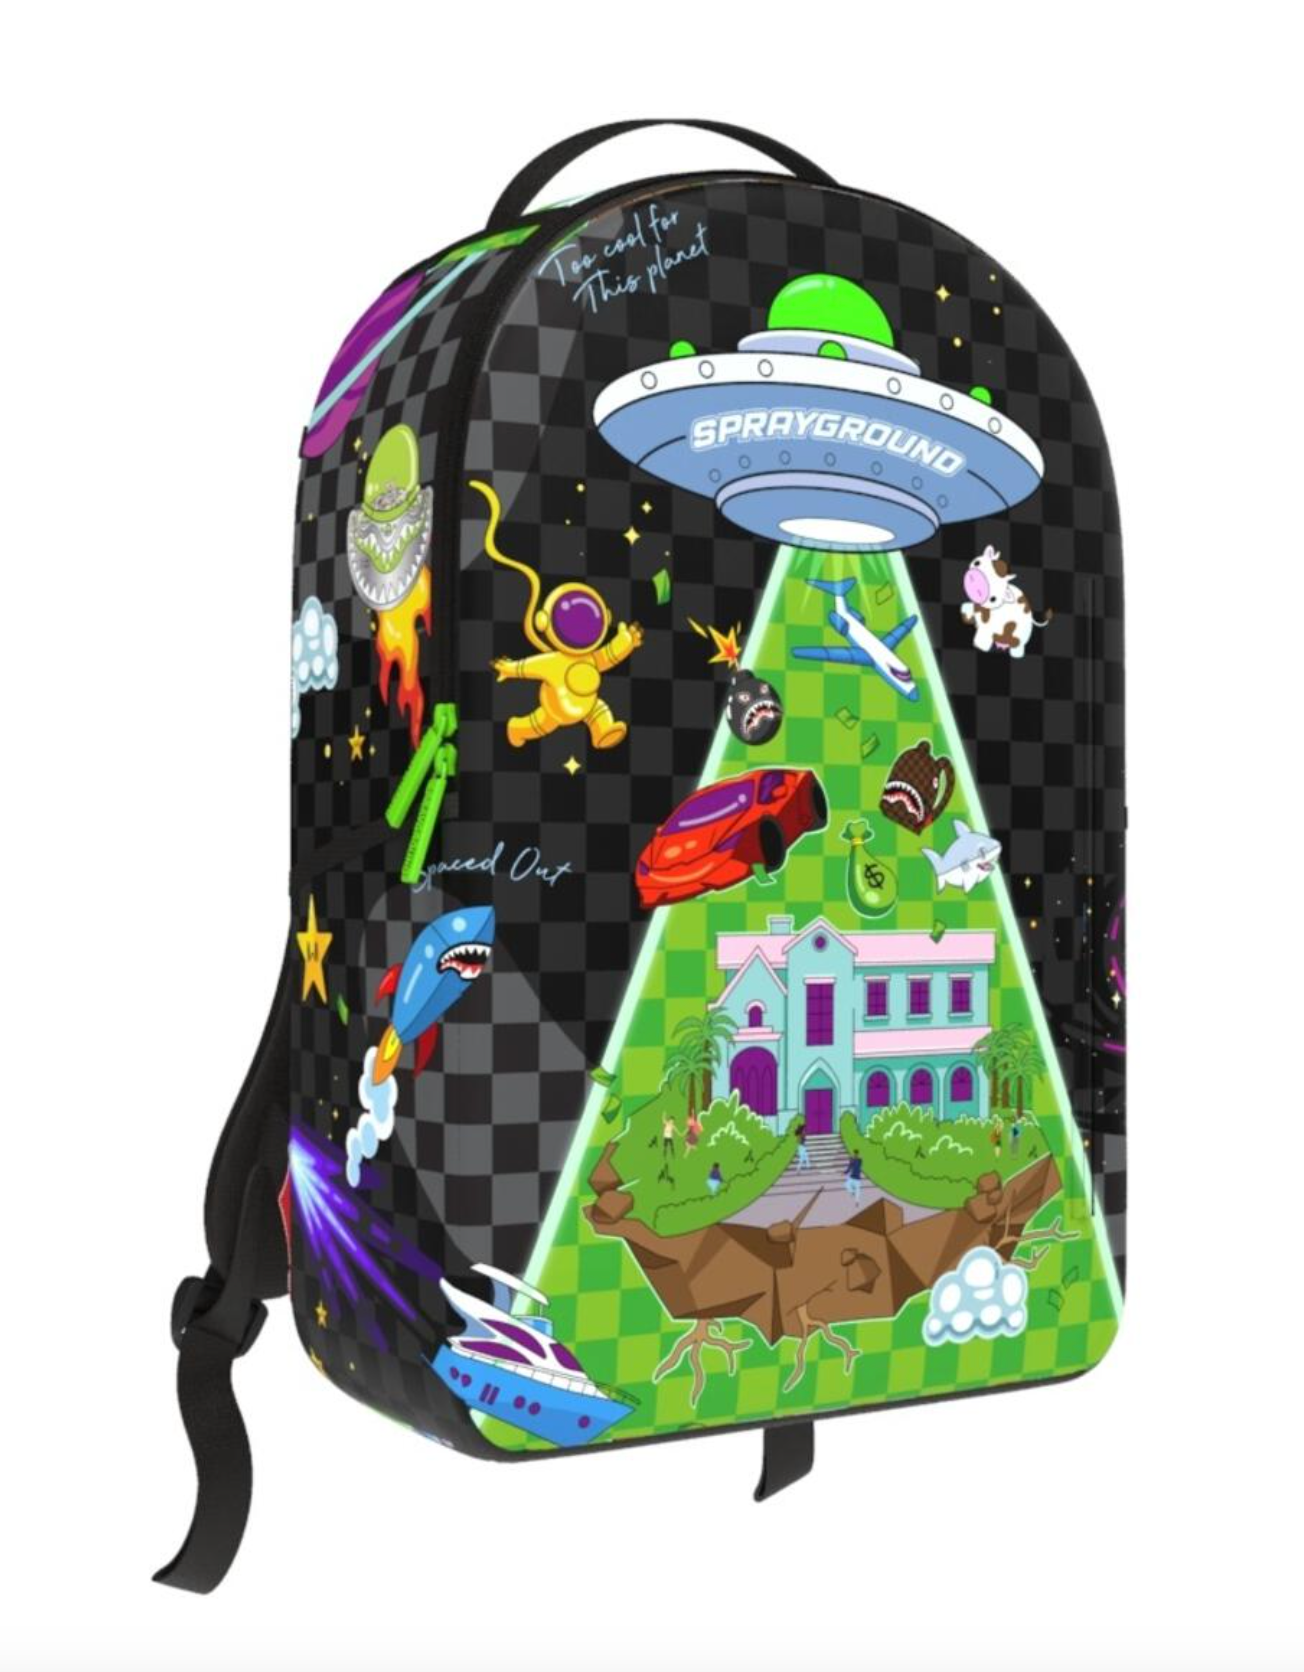 Sprayground - UFO WTF backpack - Clique Apparel